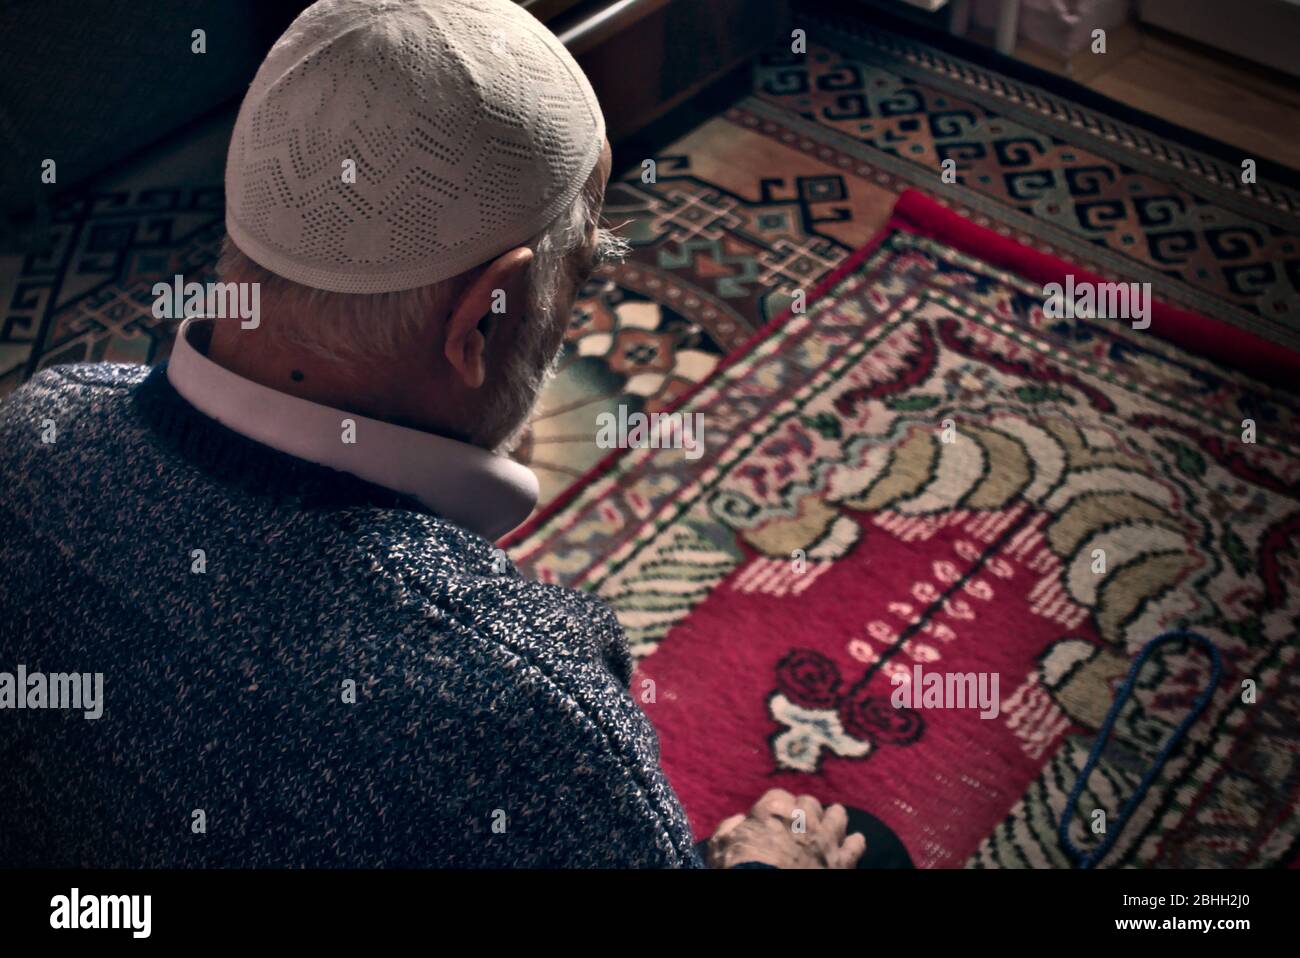 Très vieux homme musulman turc barbu dans ses années 80, portant une casquette de prière faisant la prière de Salah à sa maison sur son tapis de prière dans le mois du Ramadan Banque D'Images